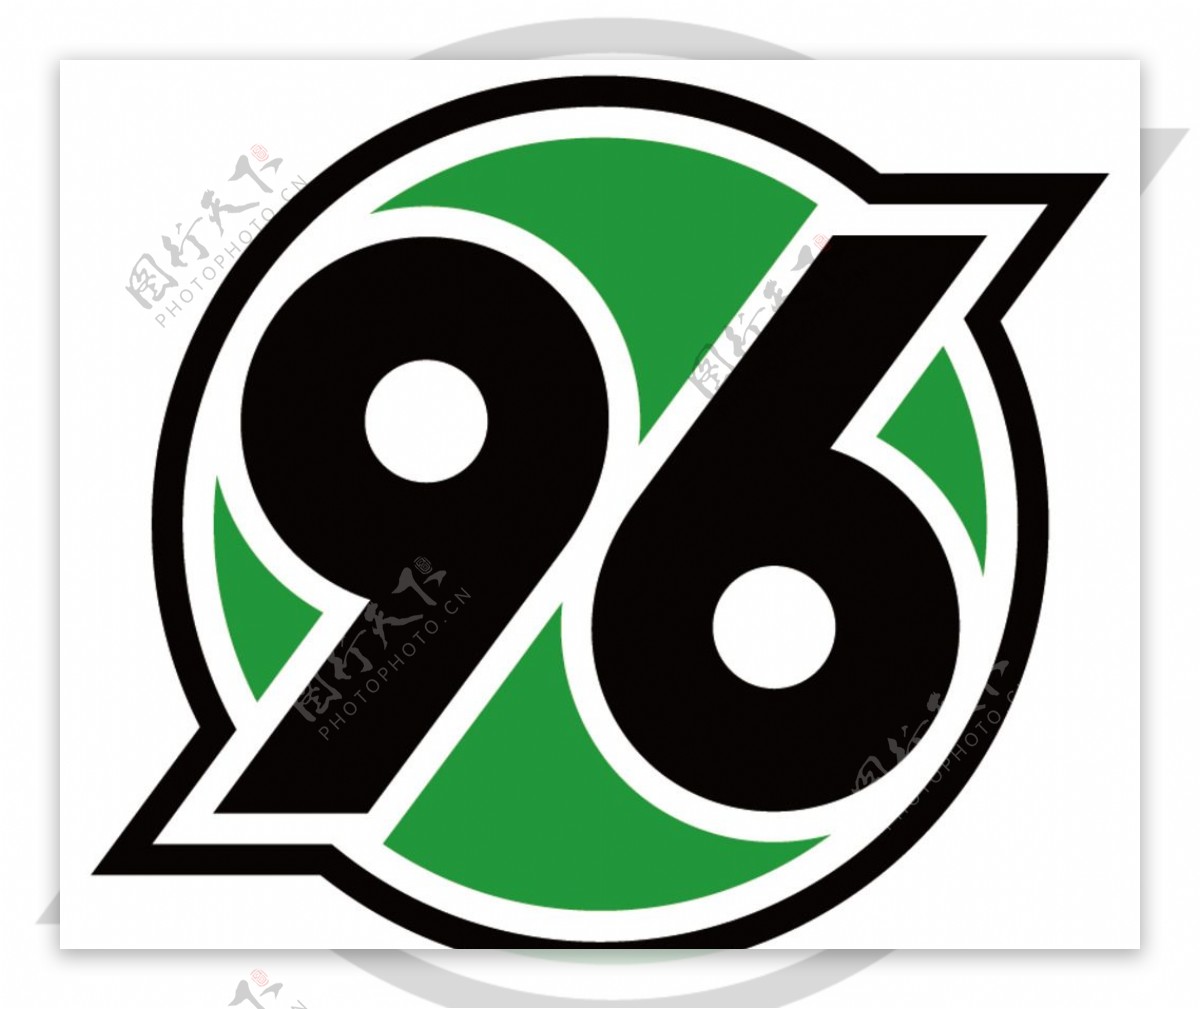 汉诺威96足球俱乐部徽标图片